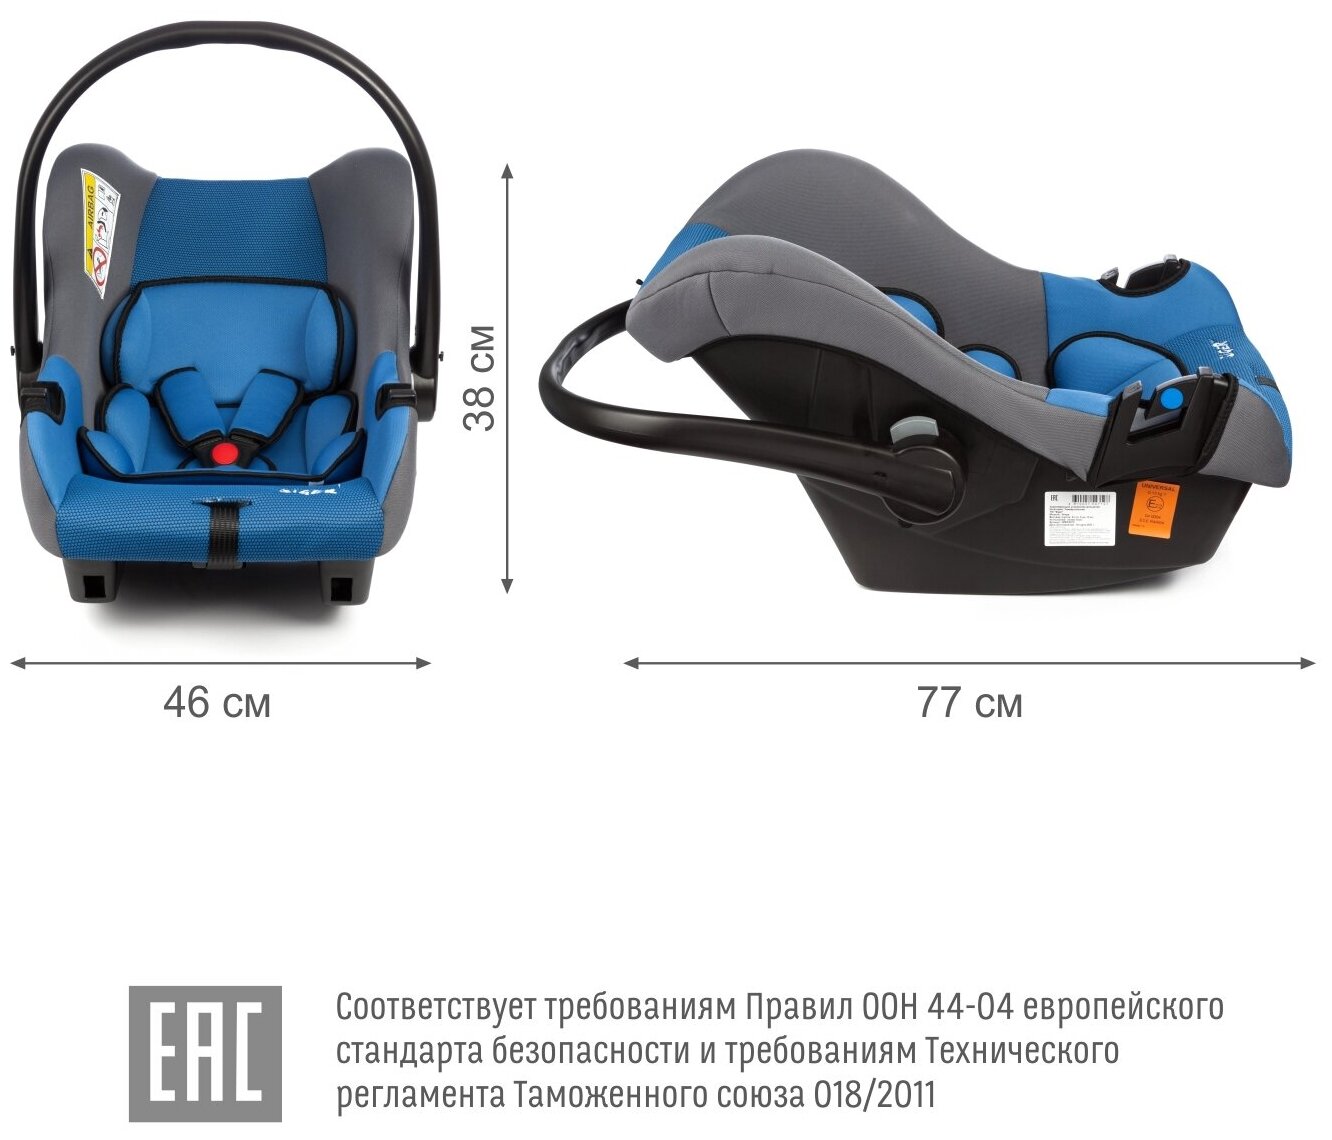 Автокресло детское, автолюлька для новорожденных Siger Эгида Люкс от 0 до 13 кг, синий